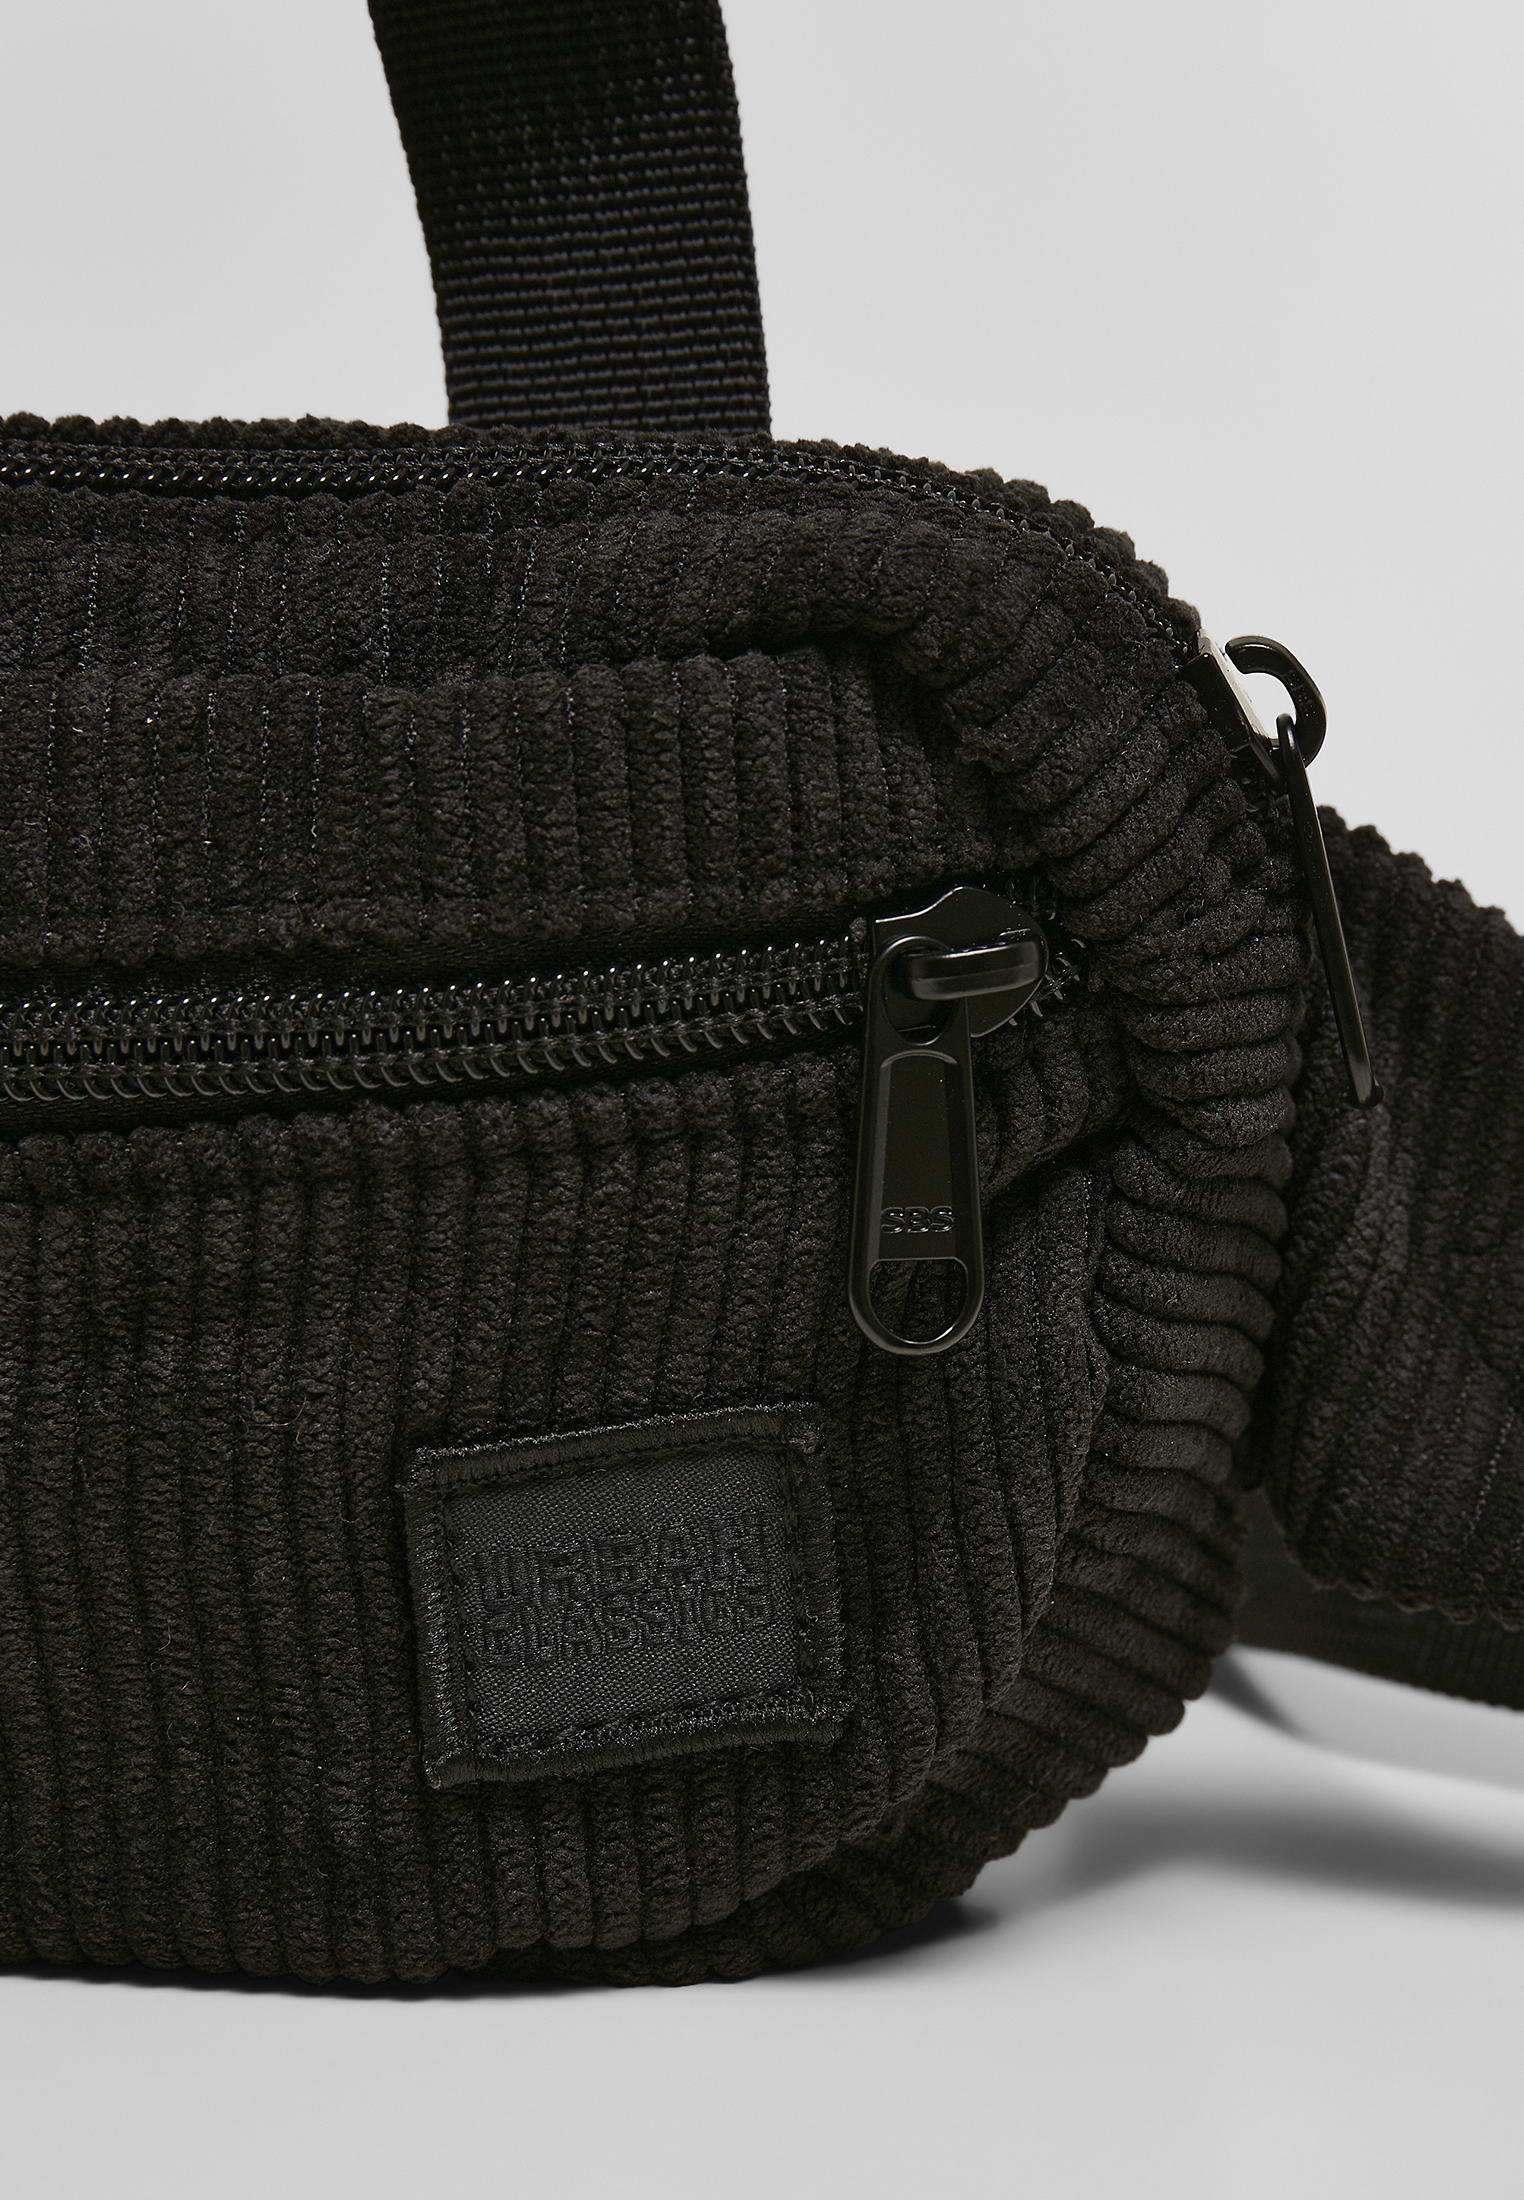 Taschen Corduroy Hip Bag in Farbe black